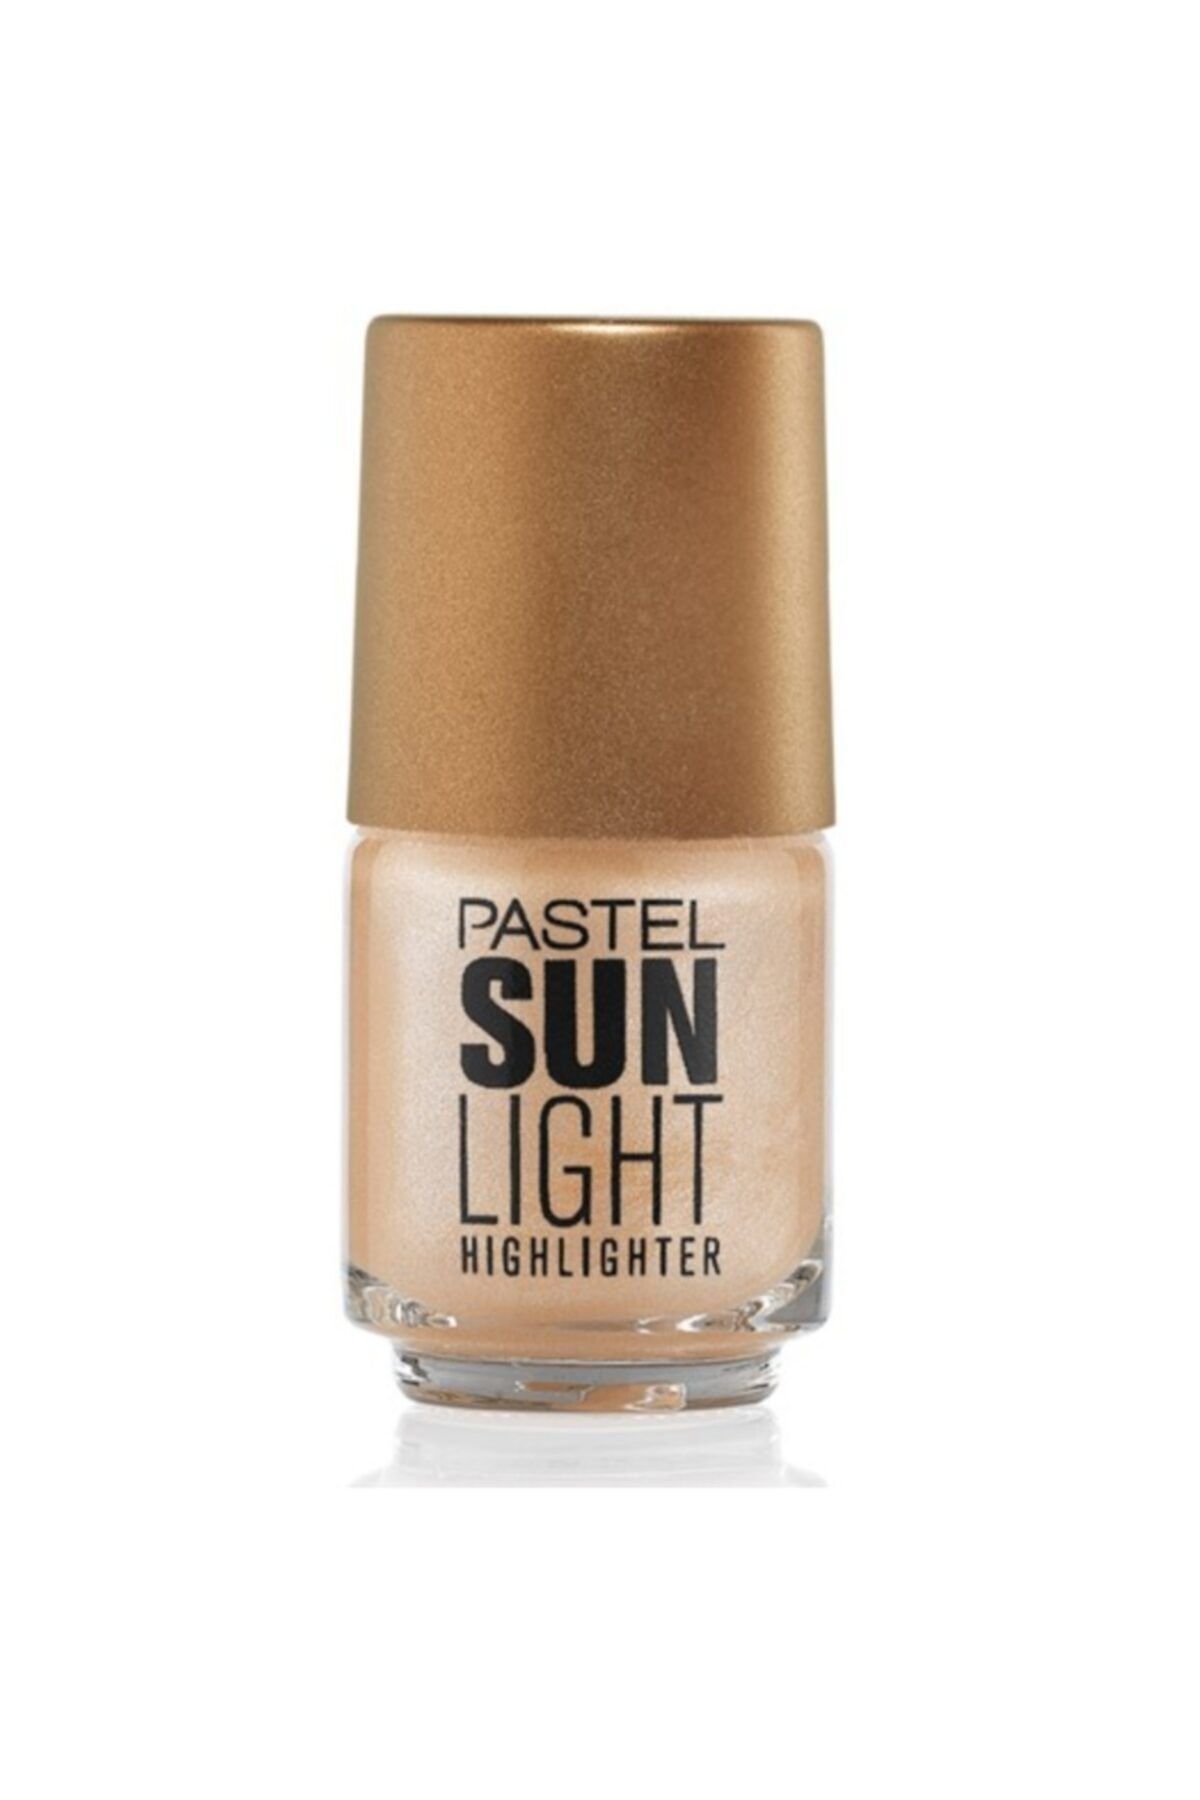 Pastel Mini Highlighter Sunlight 101